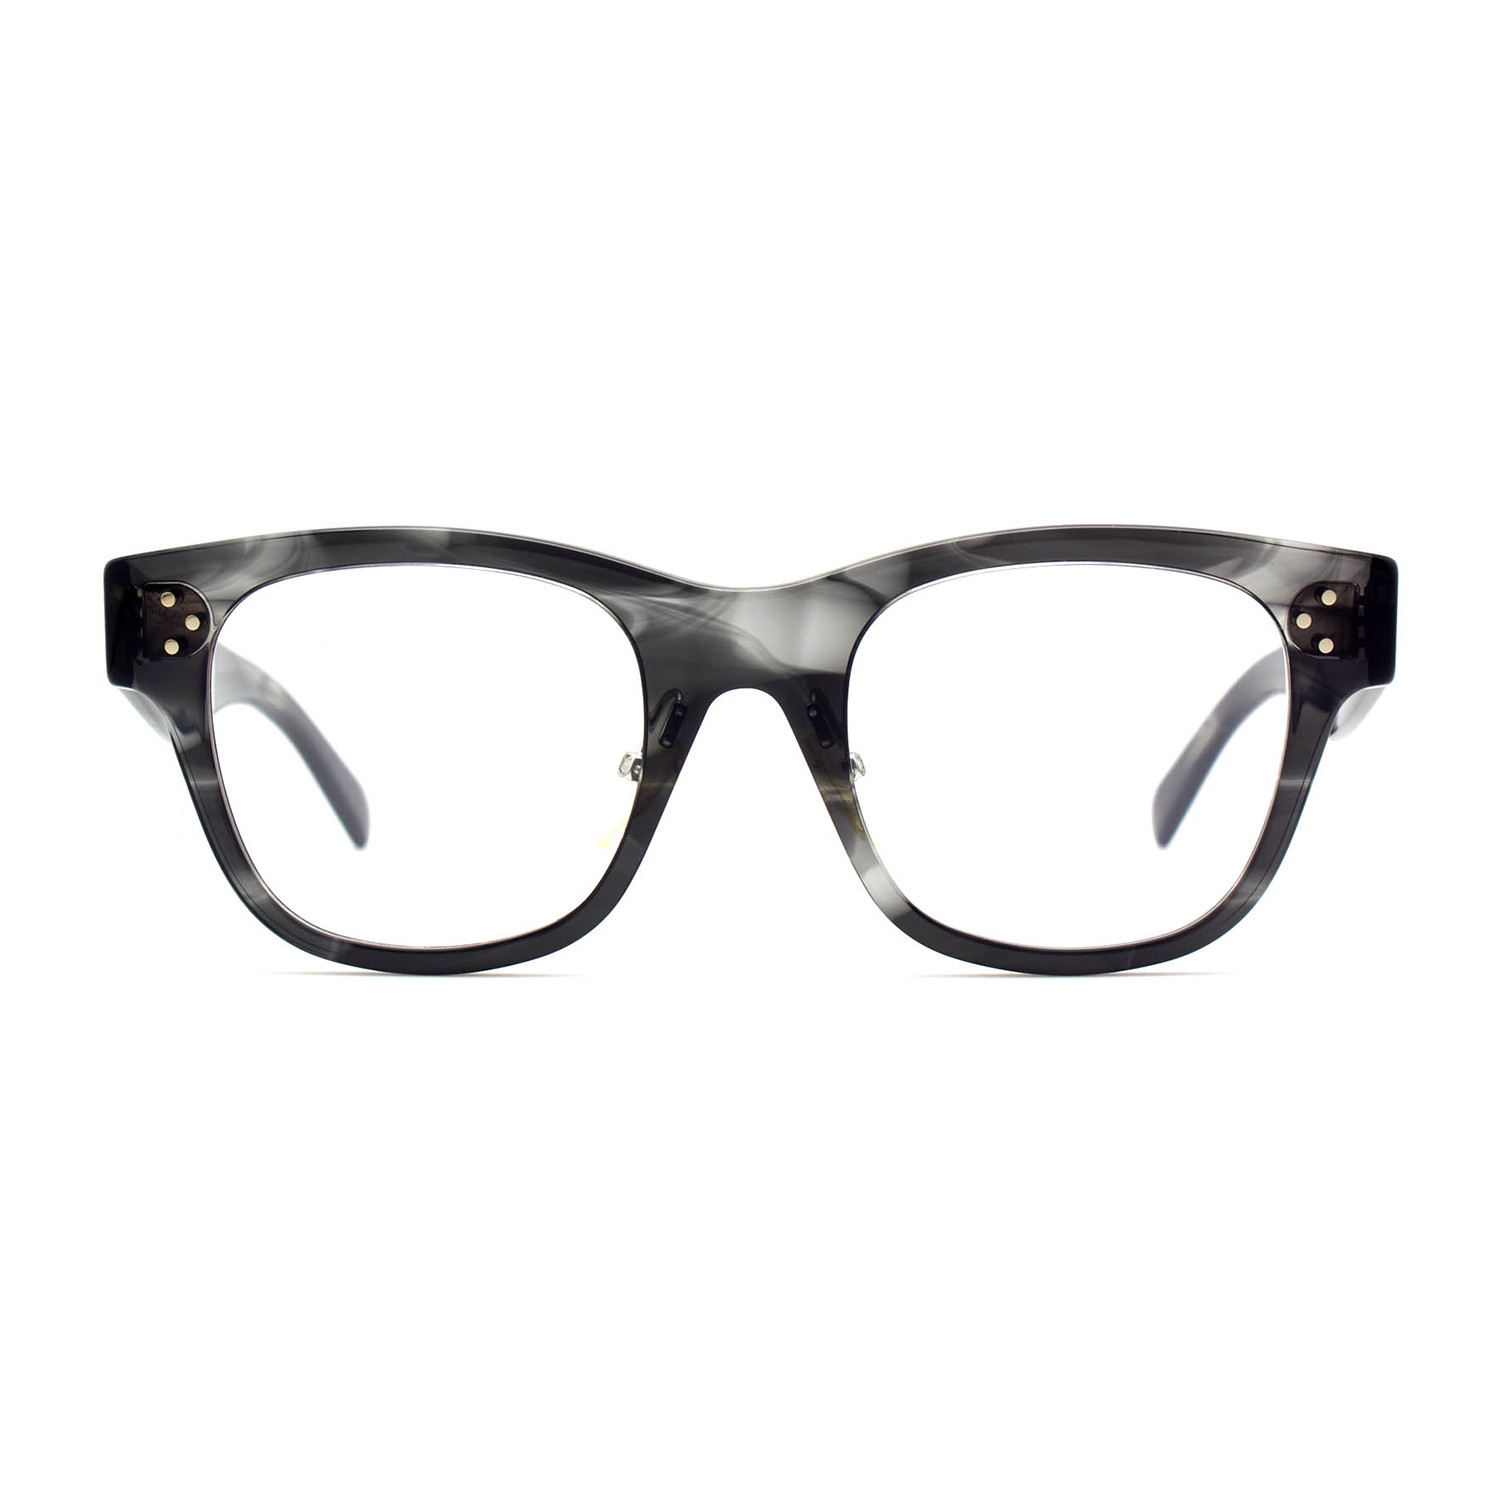 Celine Women's Optical Frames // Gray - Women's Designer Optical Frames ...